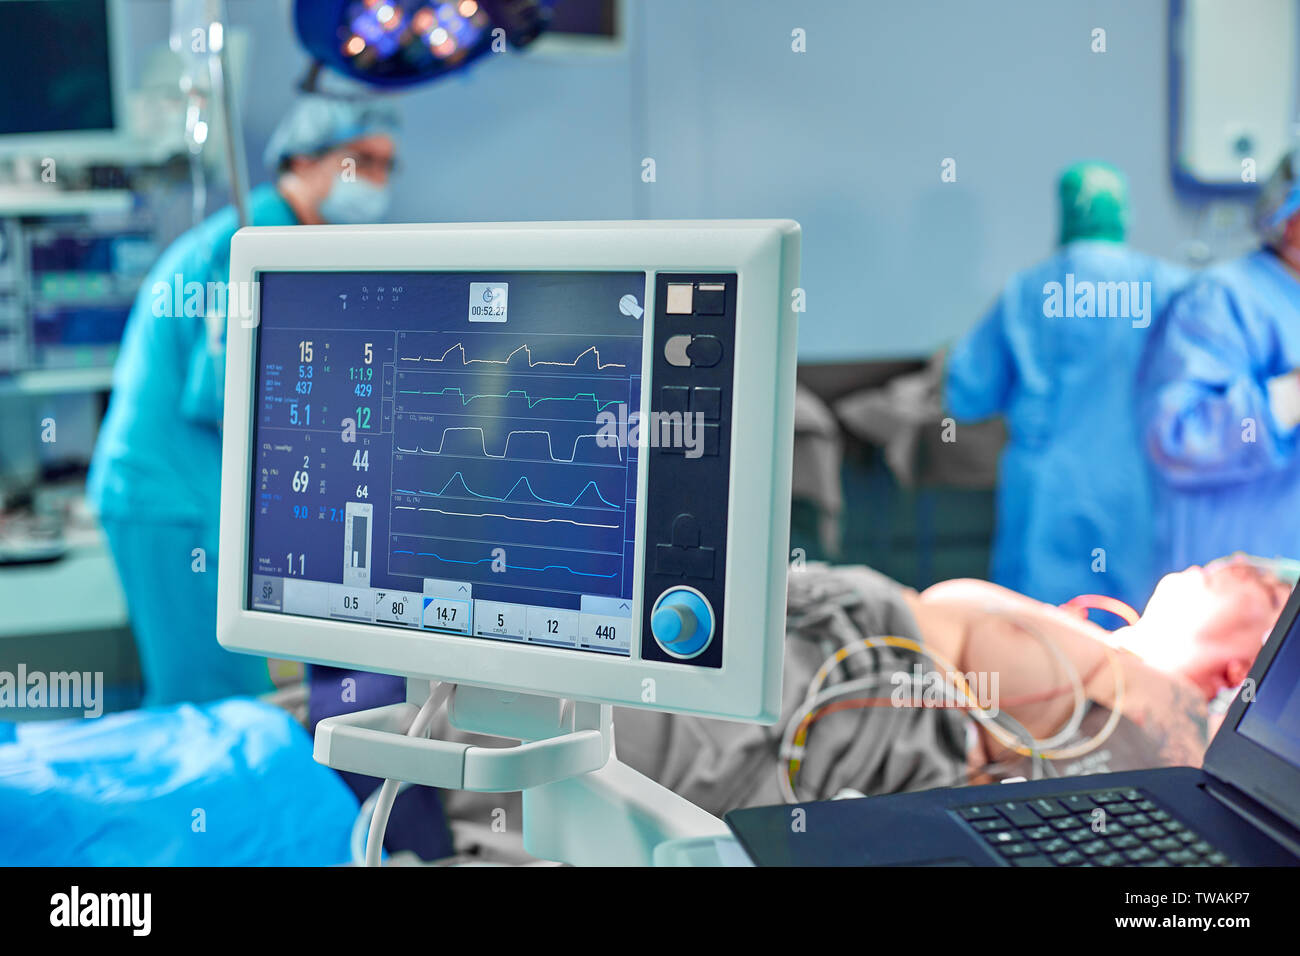 Hãy khám phá cảm giác độc đáo mà phẫu thuật tim mạch trong phòng mổ cấp cứu mang lại nhé! Các y bác sĩ được trang bị đầy đủ thiết bị và kinh nghiệm để đảm bảo thành công cho quá trình phẫu thuật. Xem ảnh để có cái nhìn chi tiết và thật sự ấn tượng với đội ngũ nền mờ chuyên nghiệp.